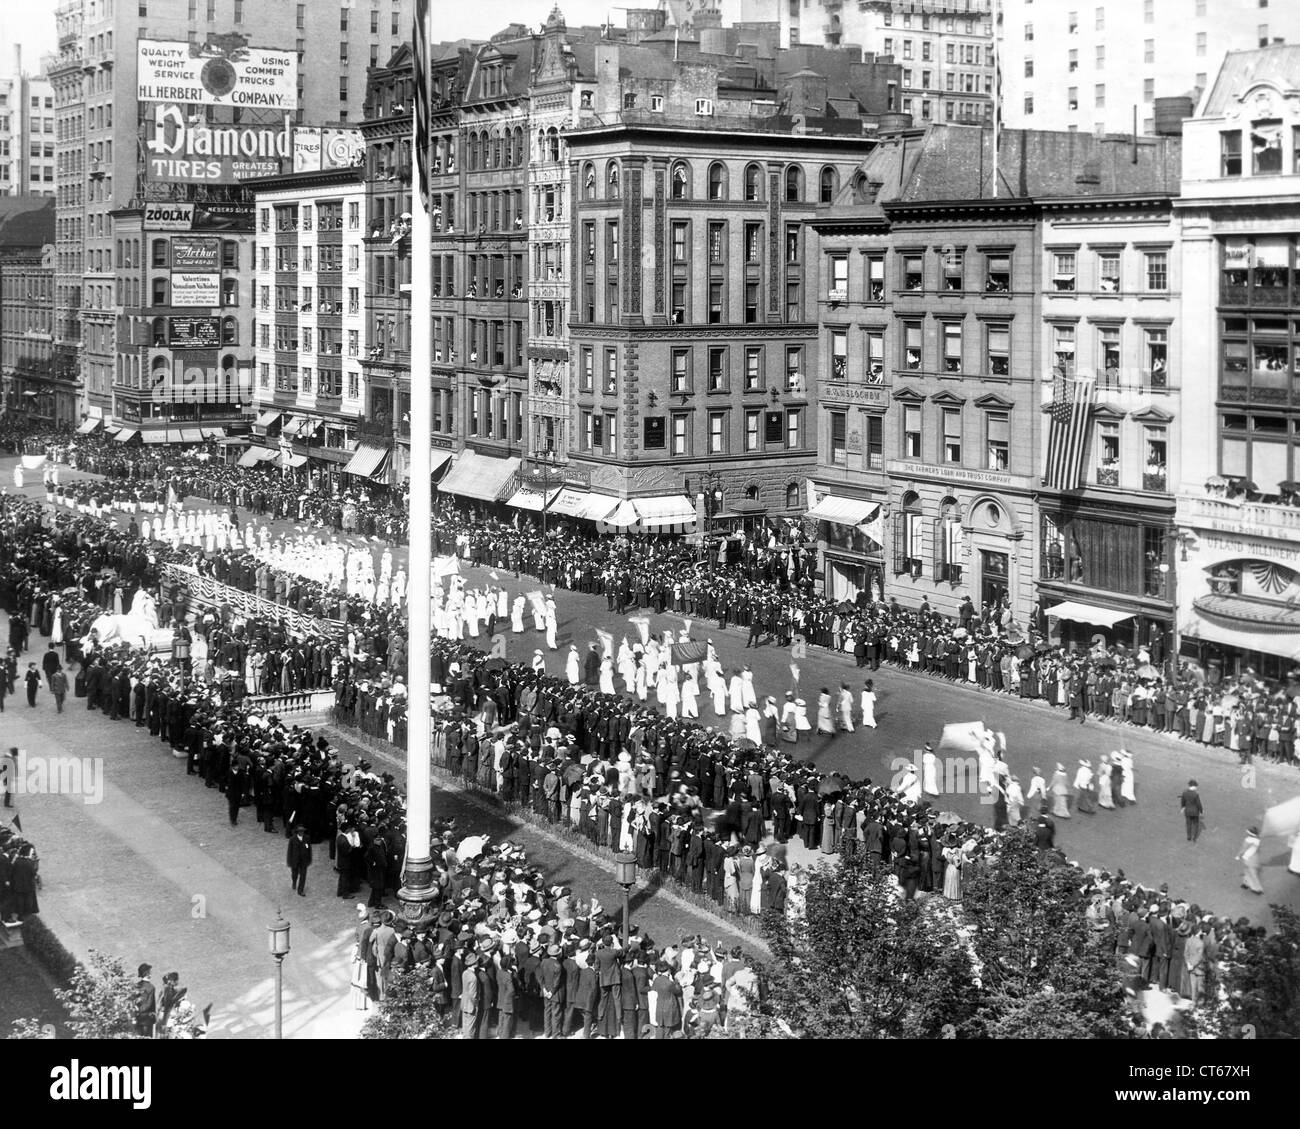 1913 Défilé de suffragettes, Cinquième Avenue, New York City Banque D'Images